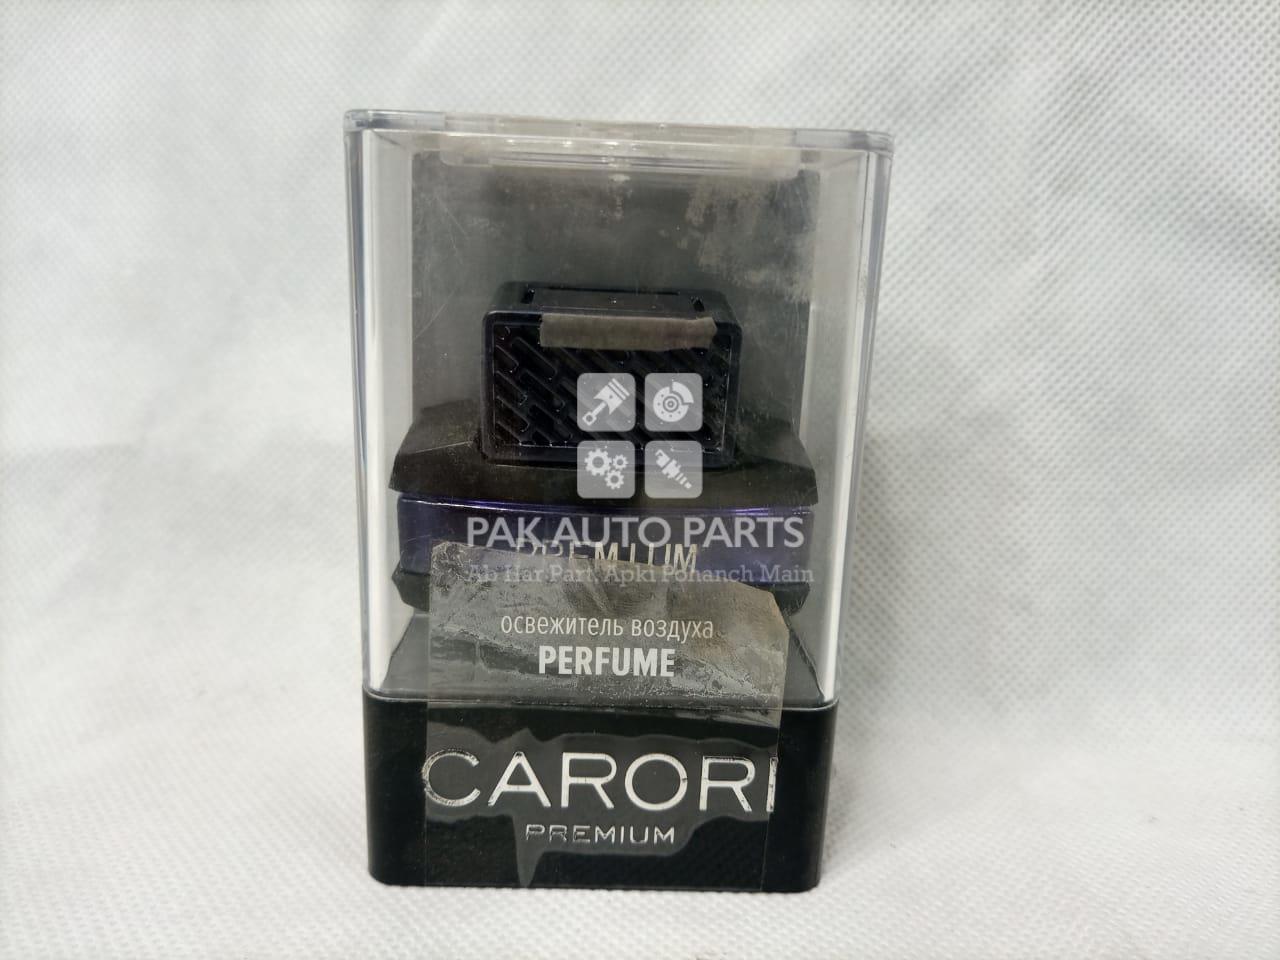 Picture of Carori Dashboard Perfume